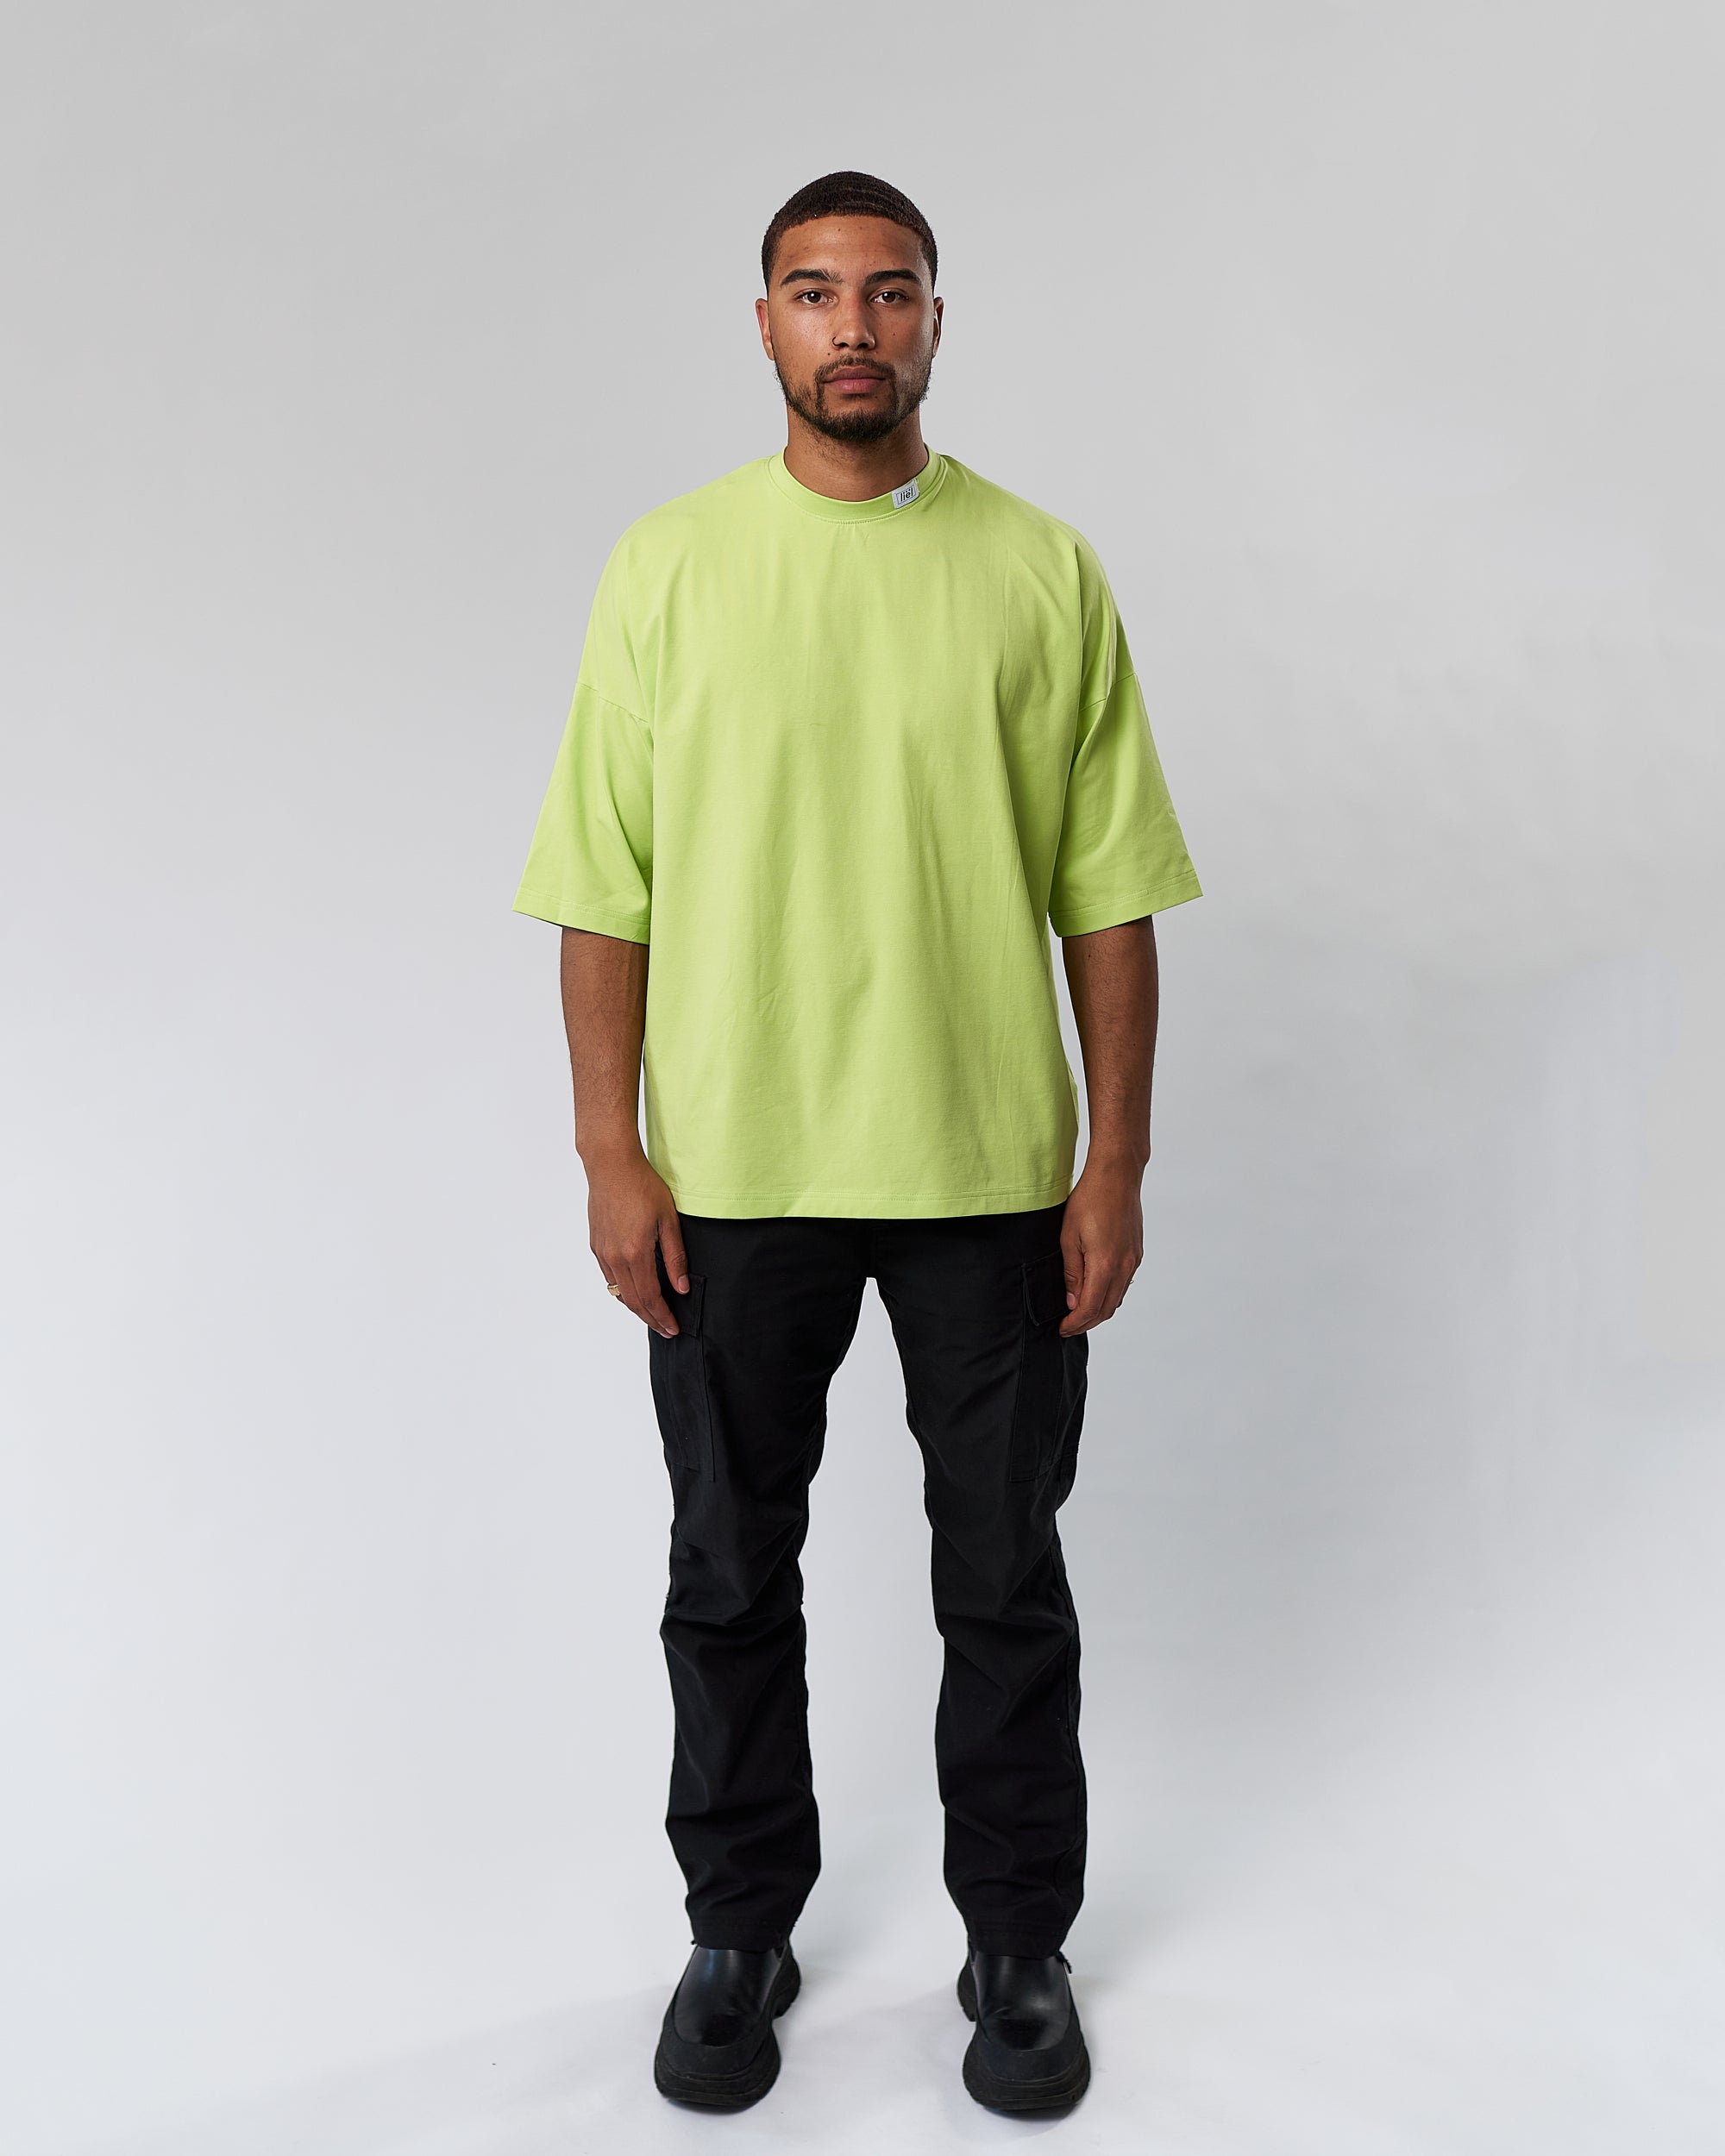 Oversized Shirt Men - Lime